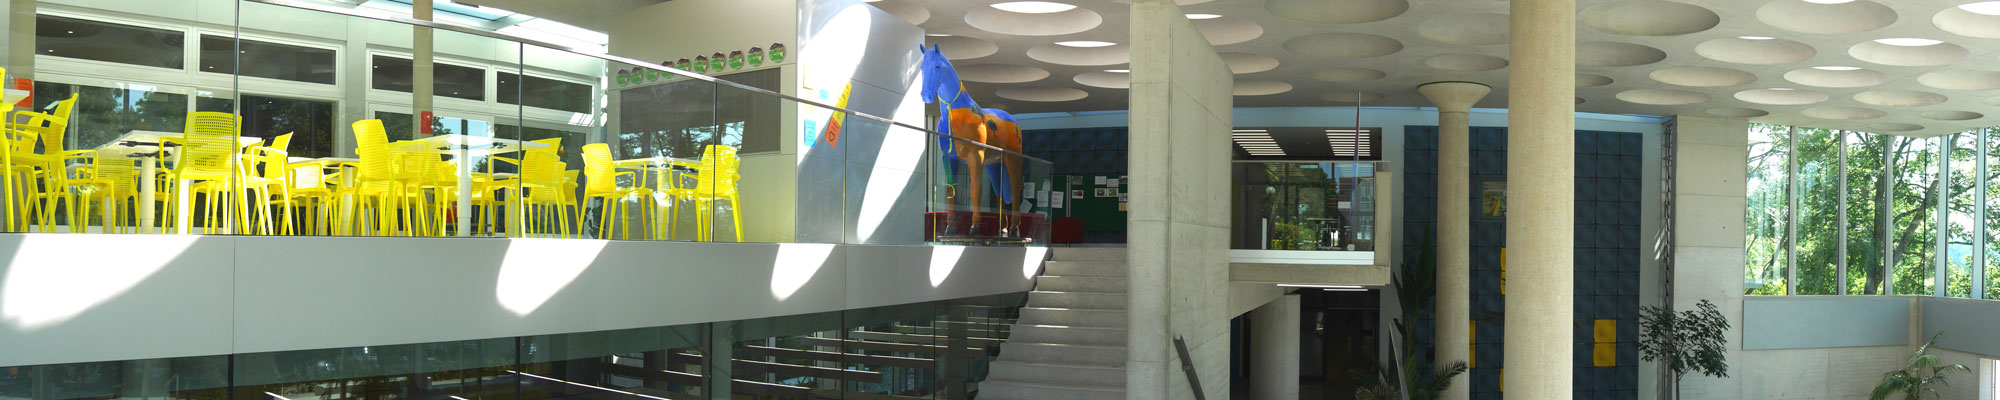 Unsere Bibliothek - Eckenberg-Gymnasium Adelsheim